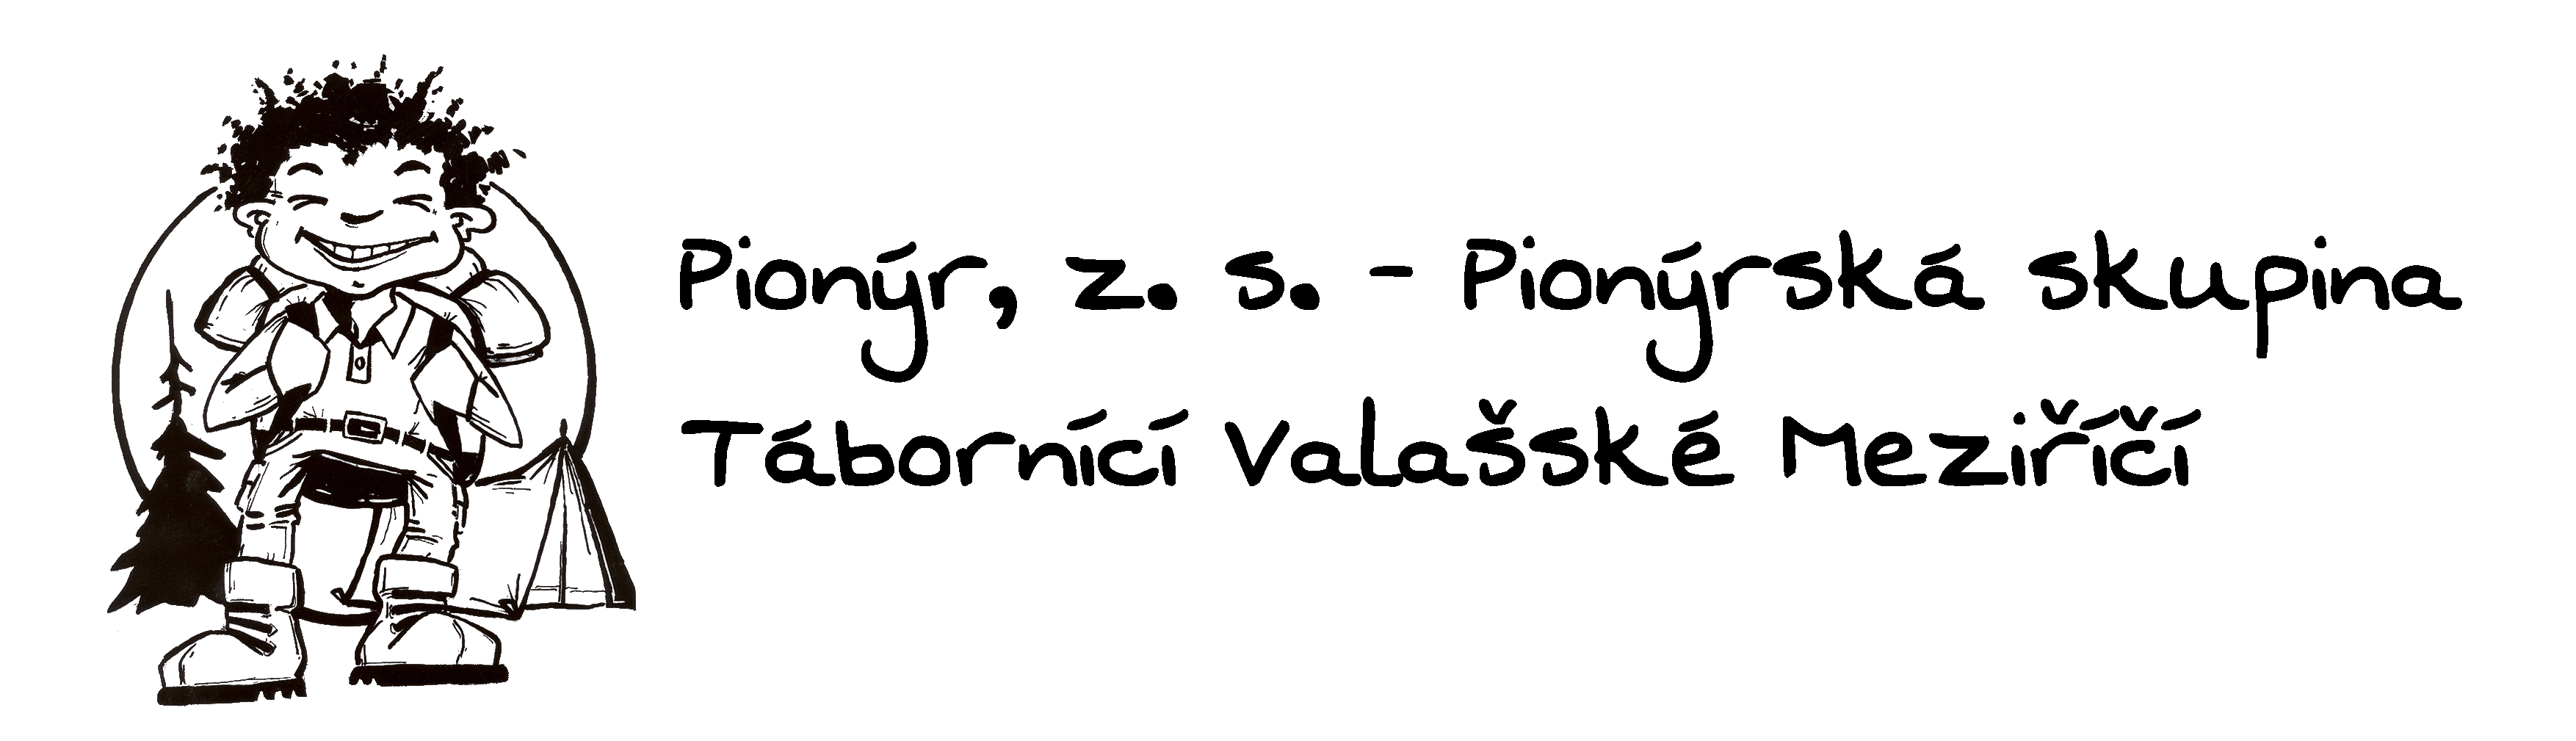 Pionýr, z. s. – Pionýrská skupina Tábornící Valašské Meziříčí